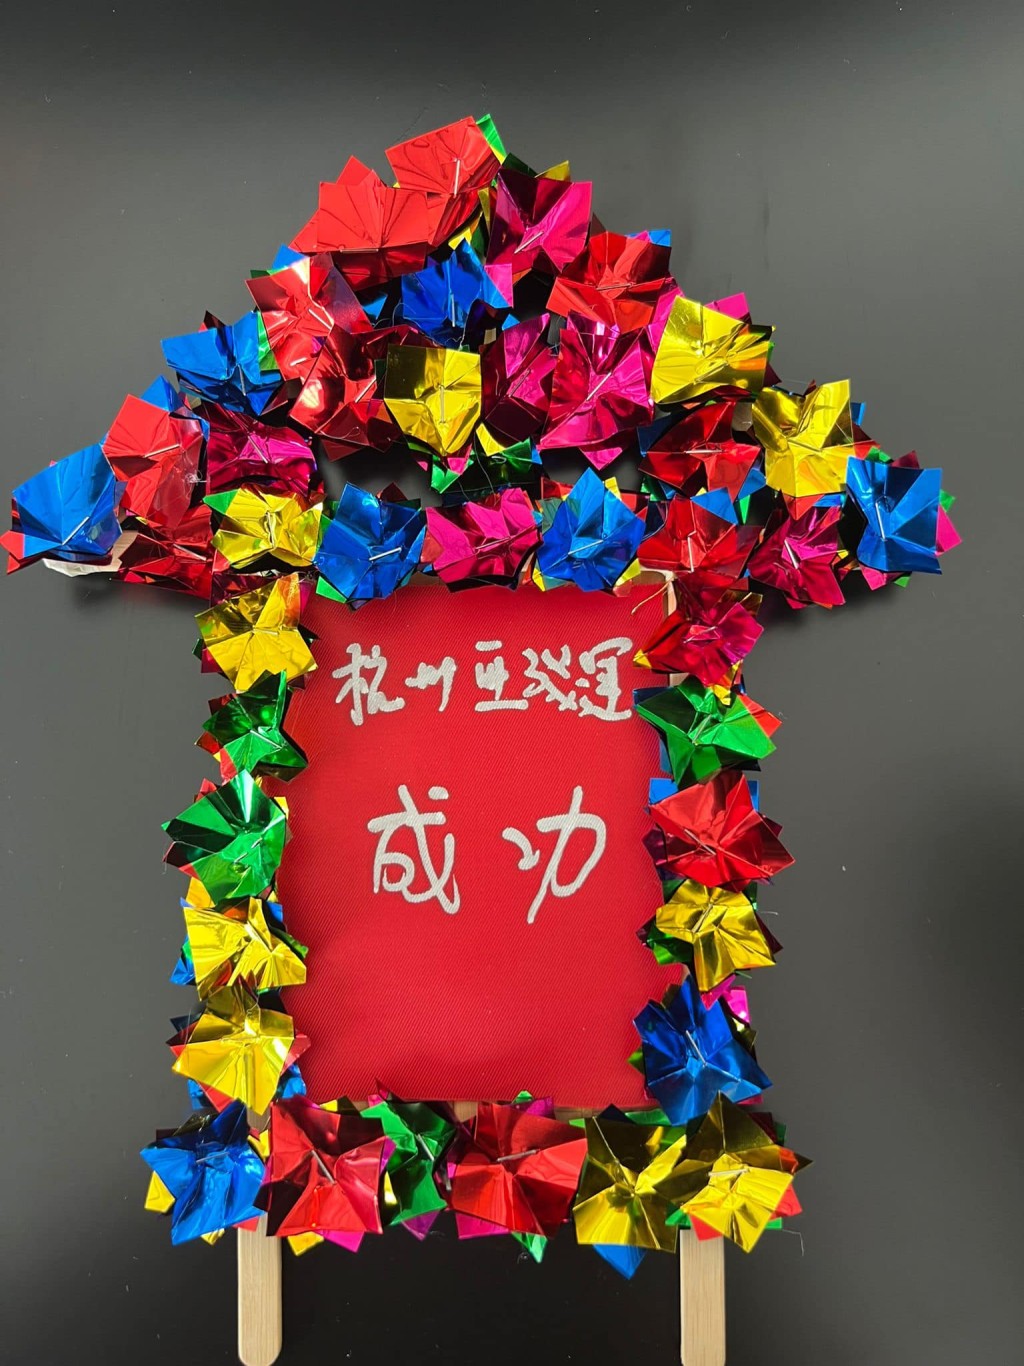 杨润雄在许愿花牌上写上「杭州亚残运成功」的祝福语。杨润雄FB